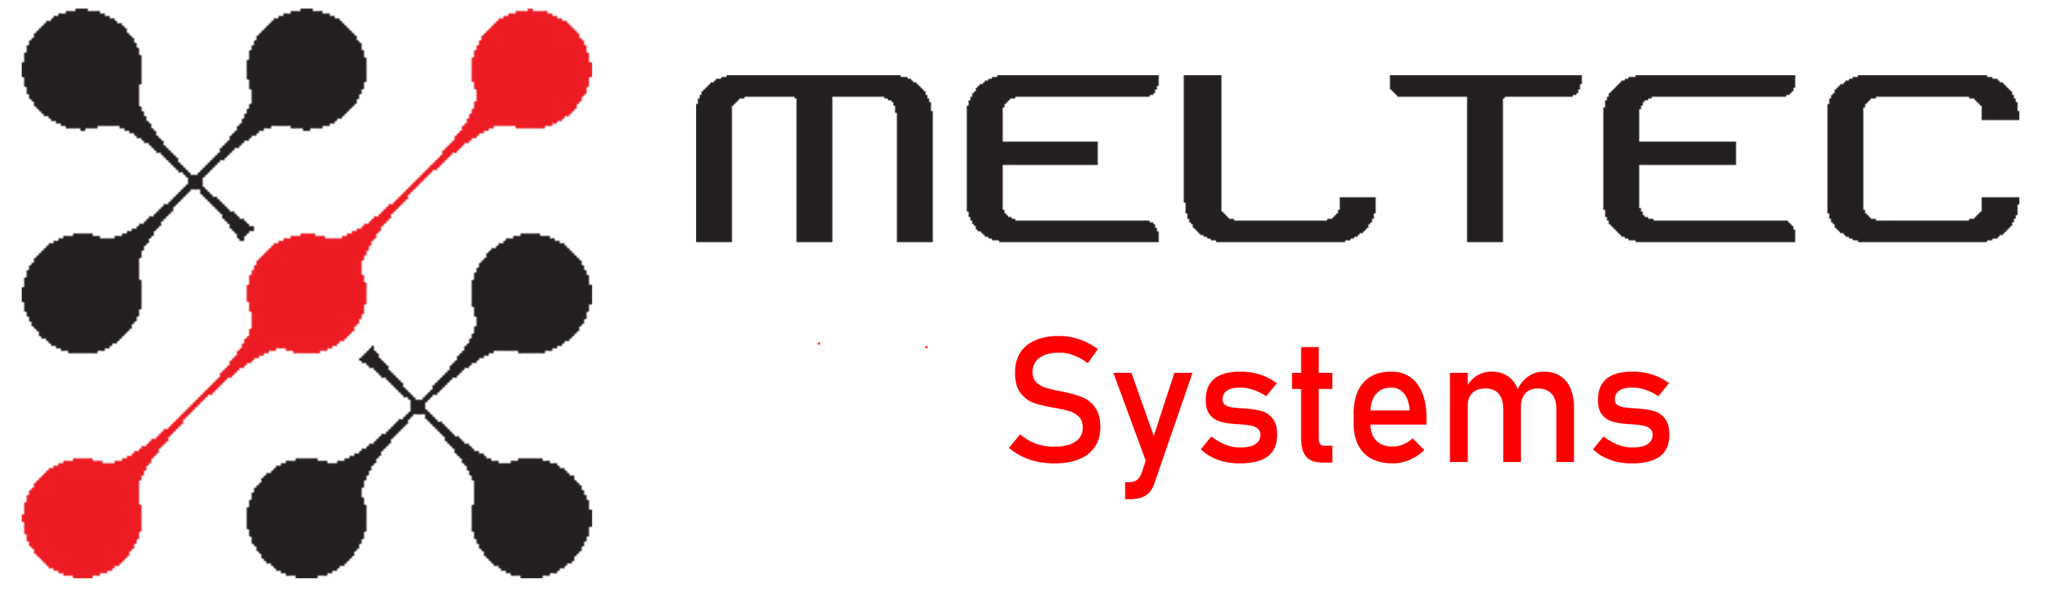 Bilder für Hersteller MELTEC Systems